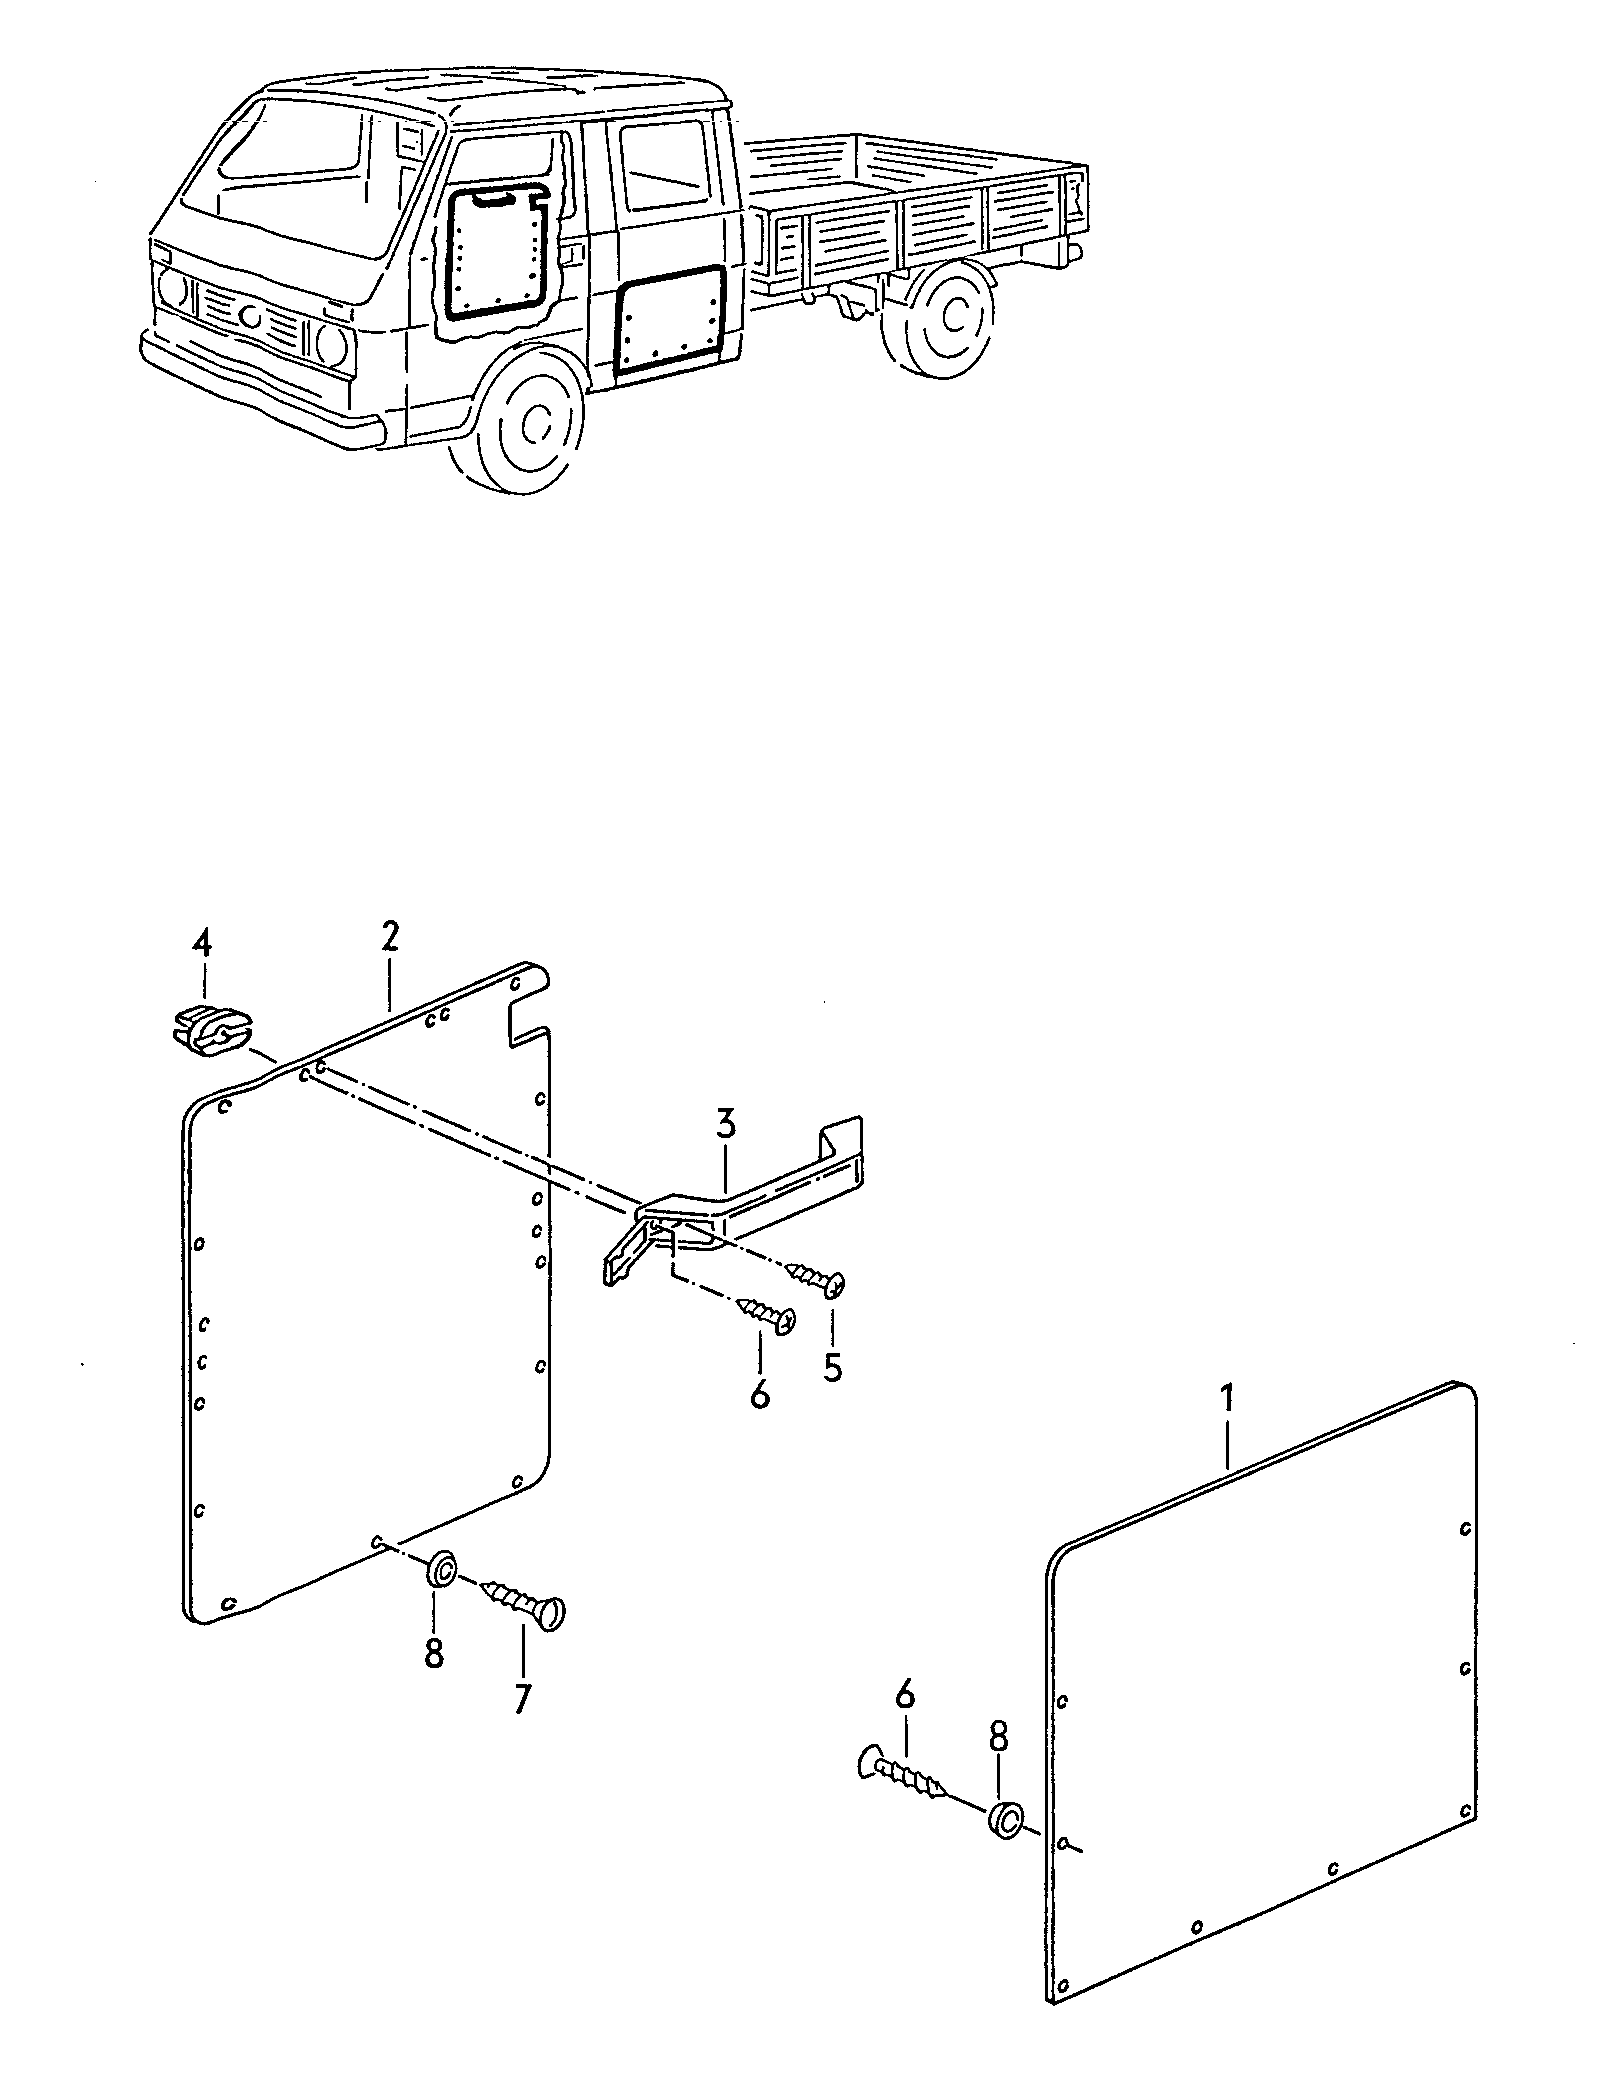 tapicerka boczna i drzwiowauchwyt podwojna kab - LT, LT 4x4 - lt